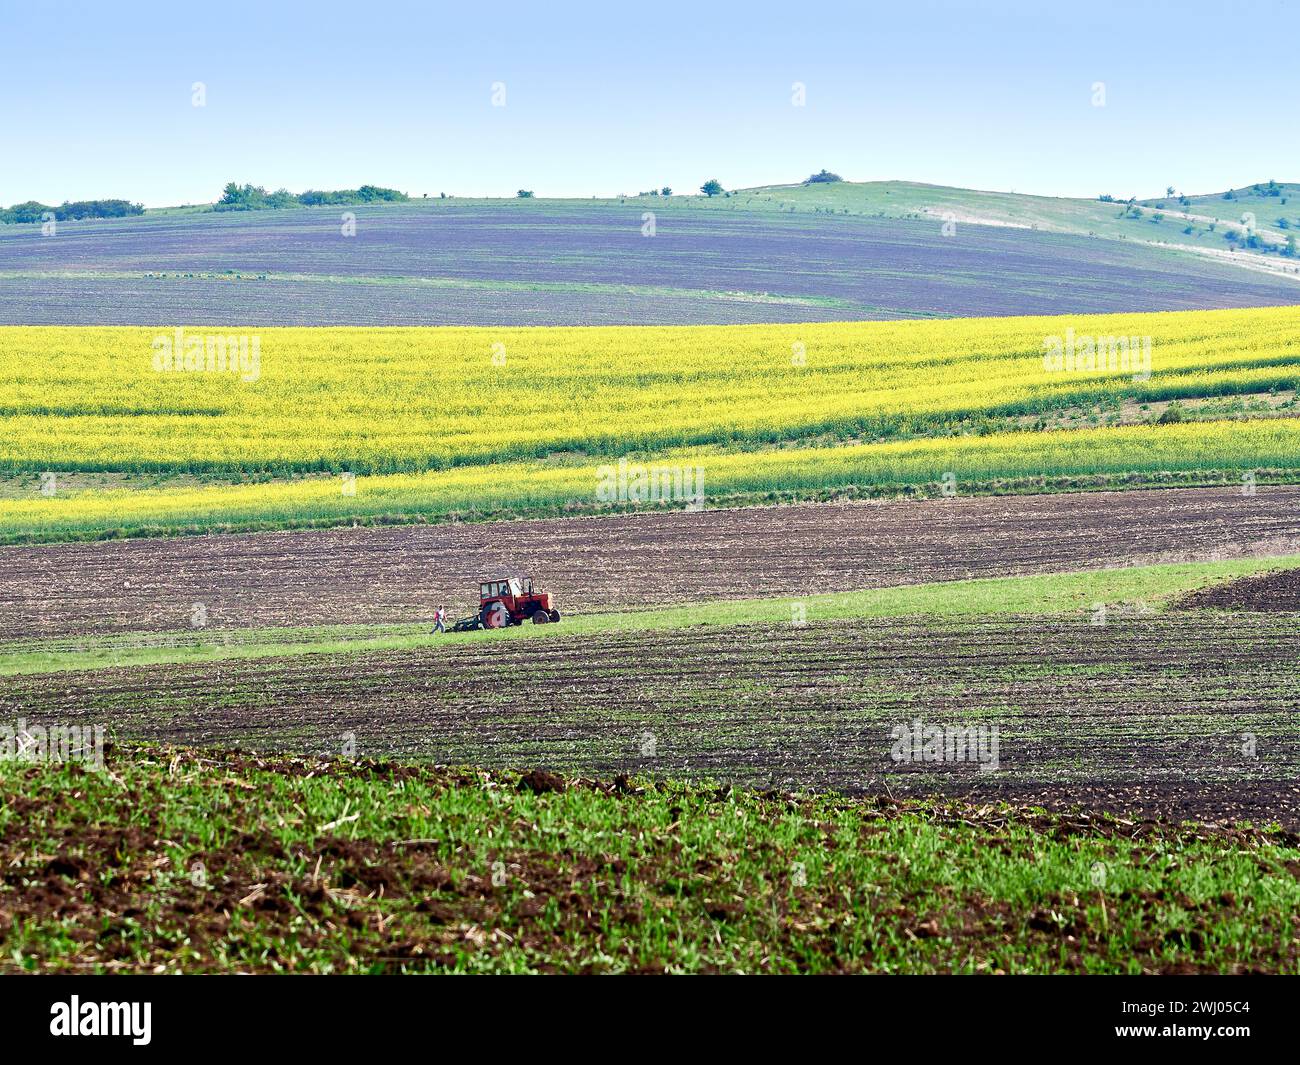 Tracteur cultivant le champ au printemps. Paysage pittoresque roumain. Agriculture à la ferme, campagne au printemps. Banque D'Images